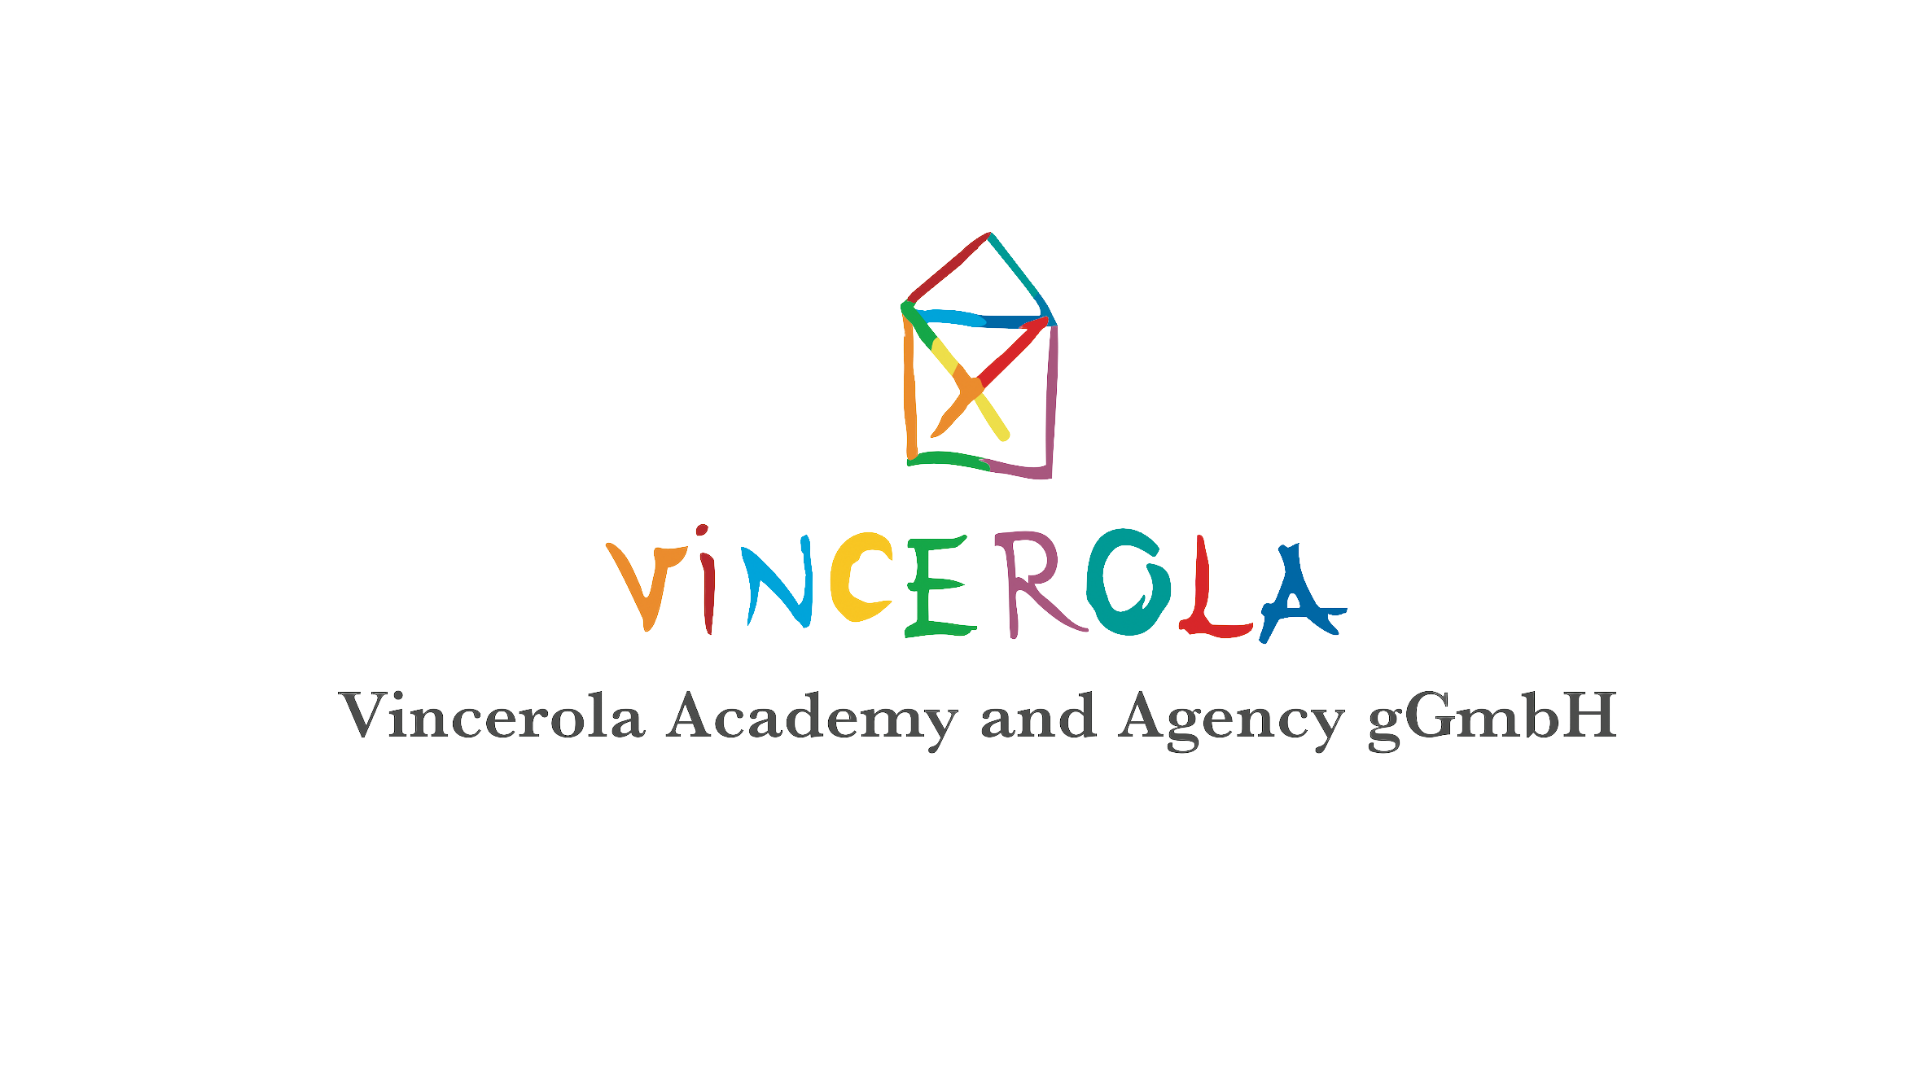 Vincerola Academy